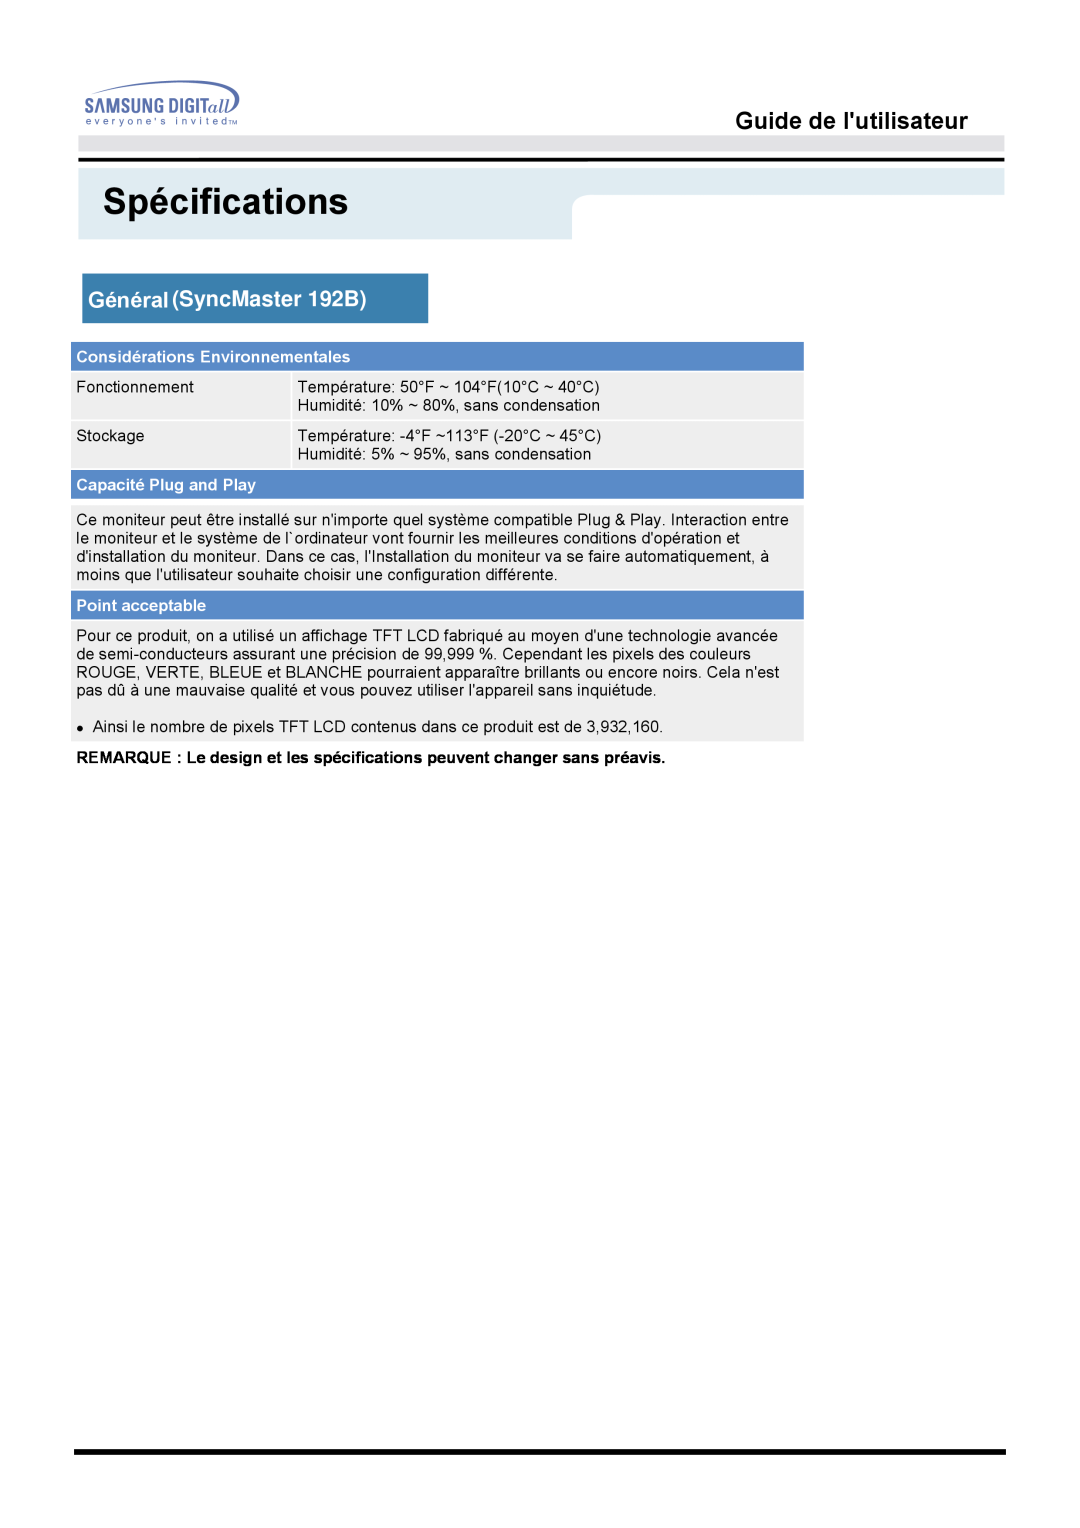 Samsung MO19ESZS manual Spécifications, Guide de lutilisateur, Général SyncMaster 192B, Considérations Environnementales 